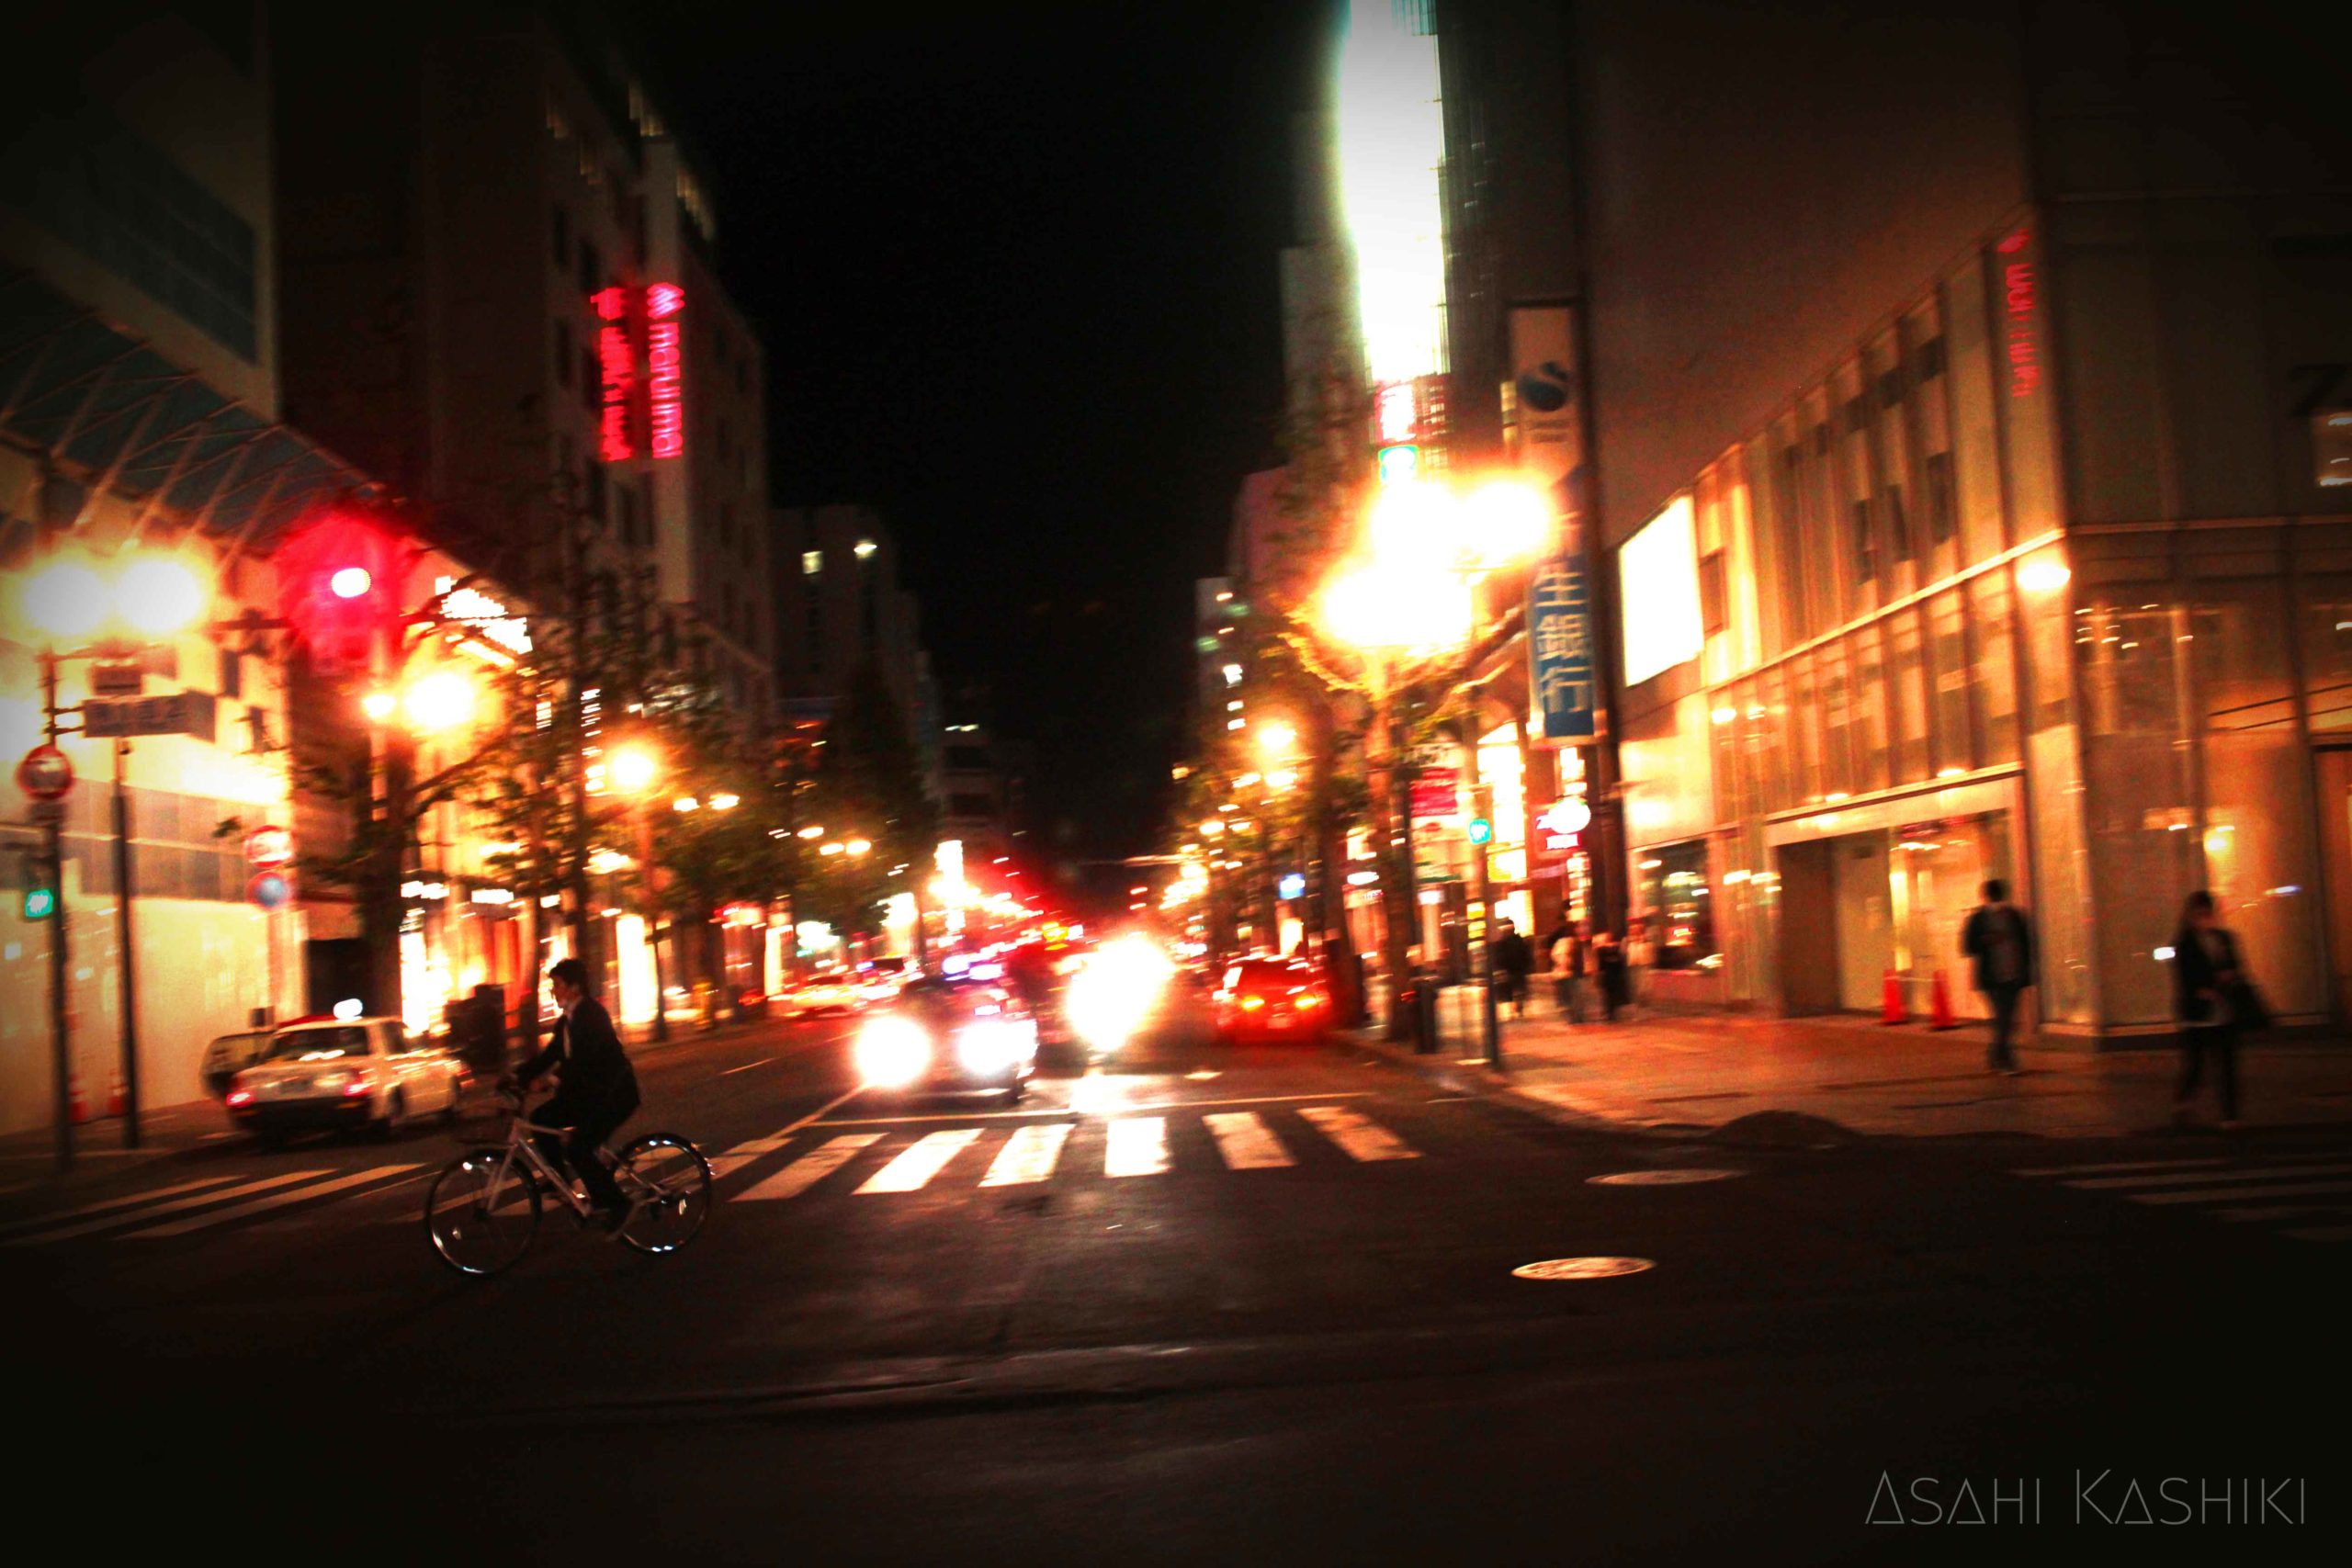 夜の通りの写真。街灯や車の明かりが明るく光る